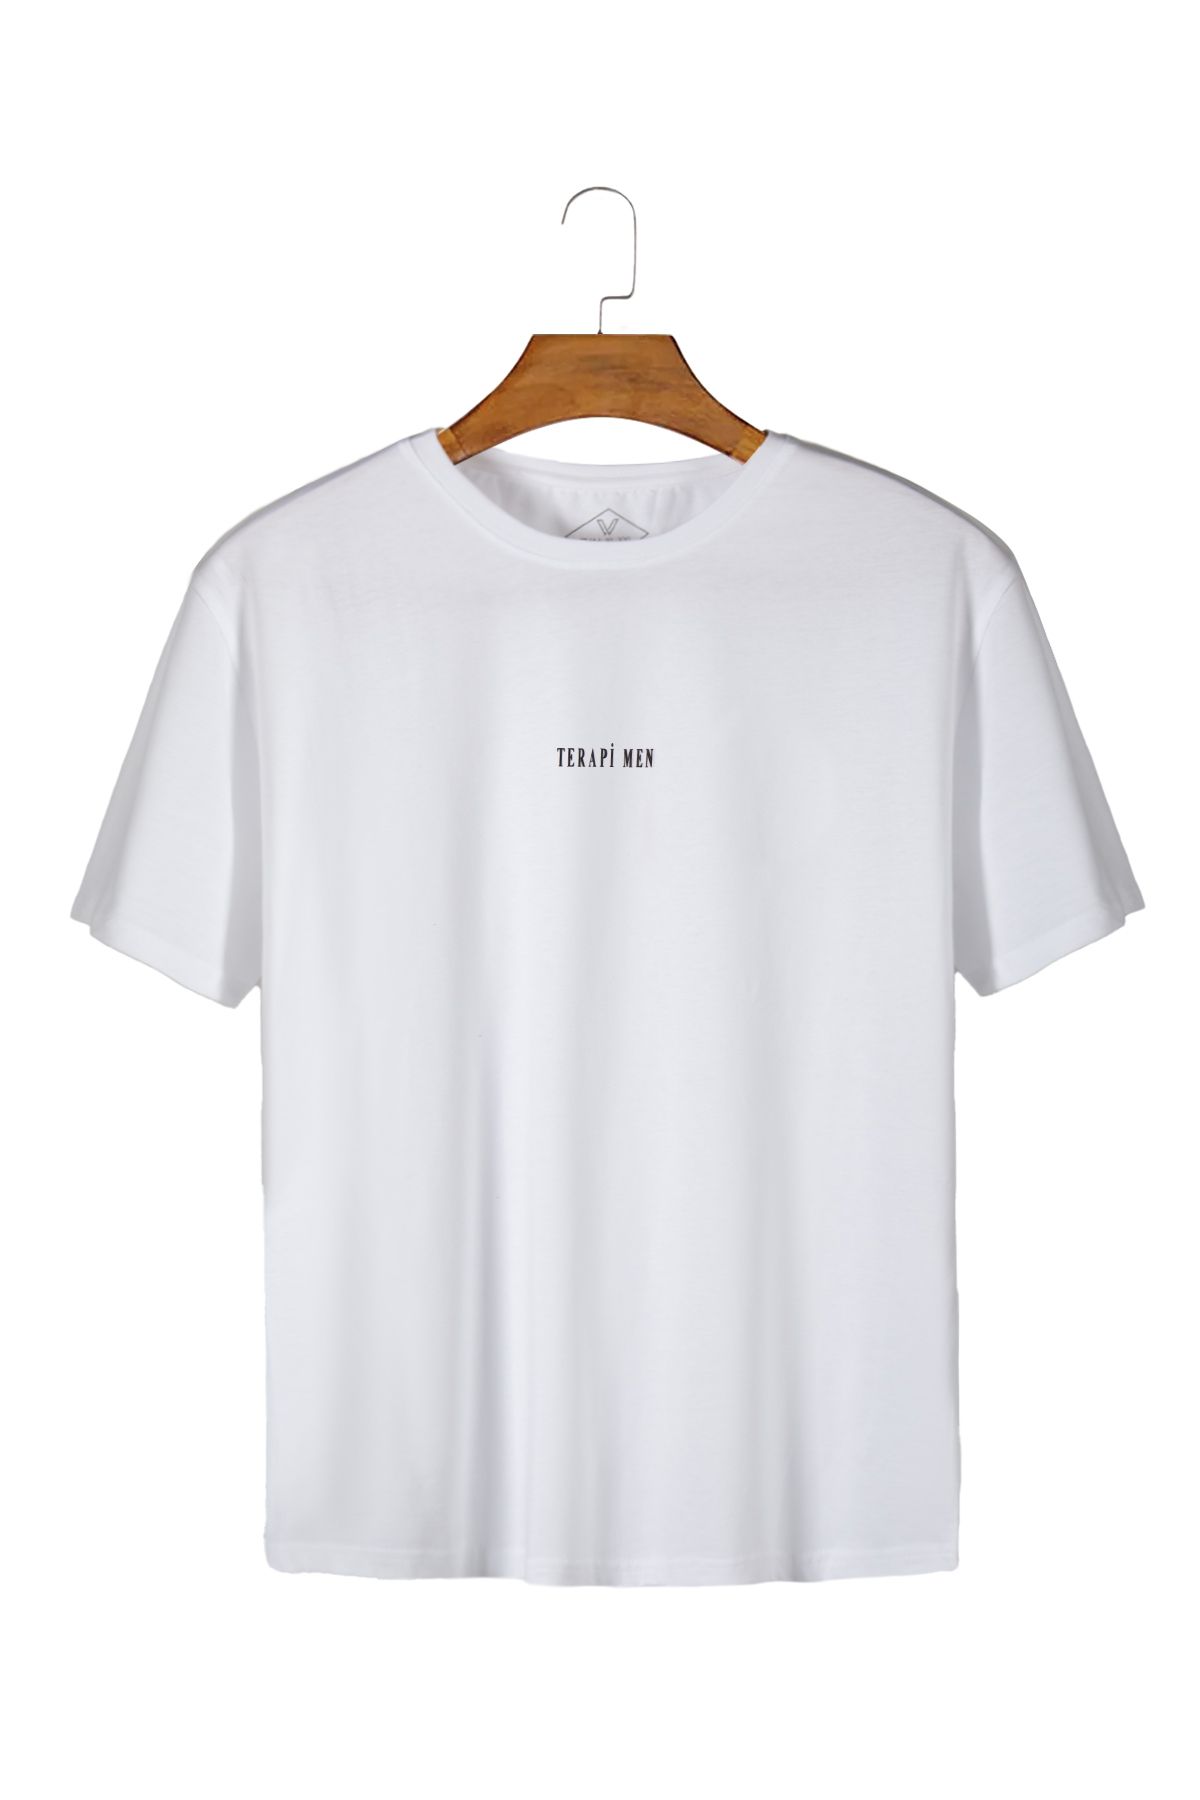 Terapi Men Unisex Beyaz Önü TERAPİ MEN Baskılı Bisiklet Yaka Oversize Kalıp Basic Pamuklu T-Shirt